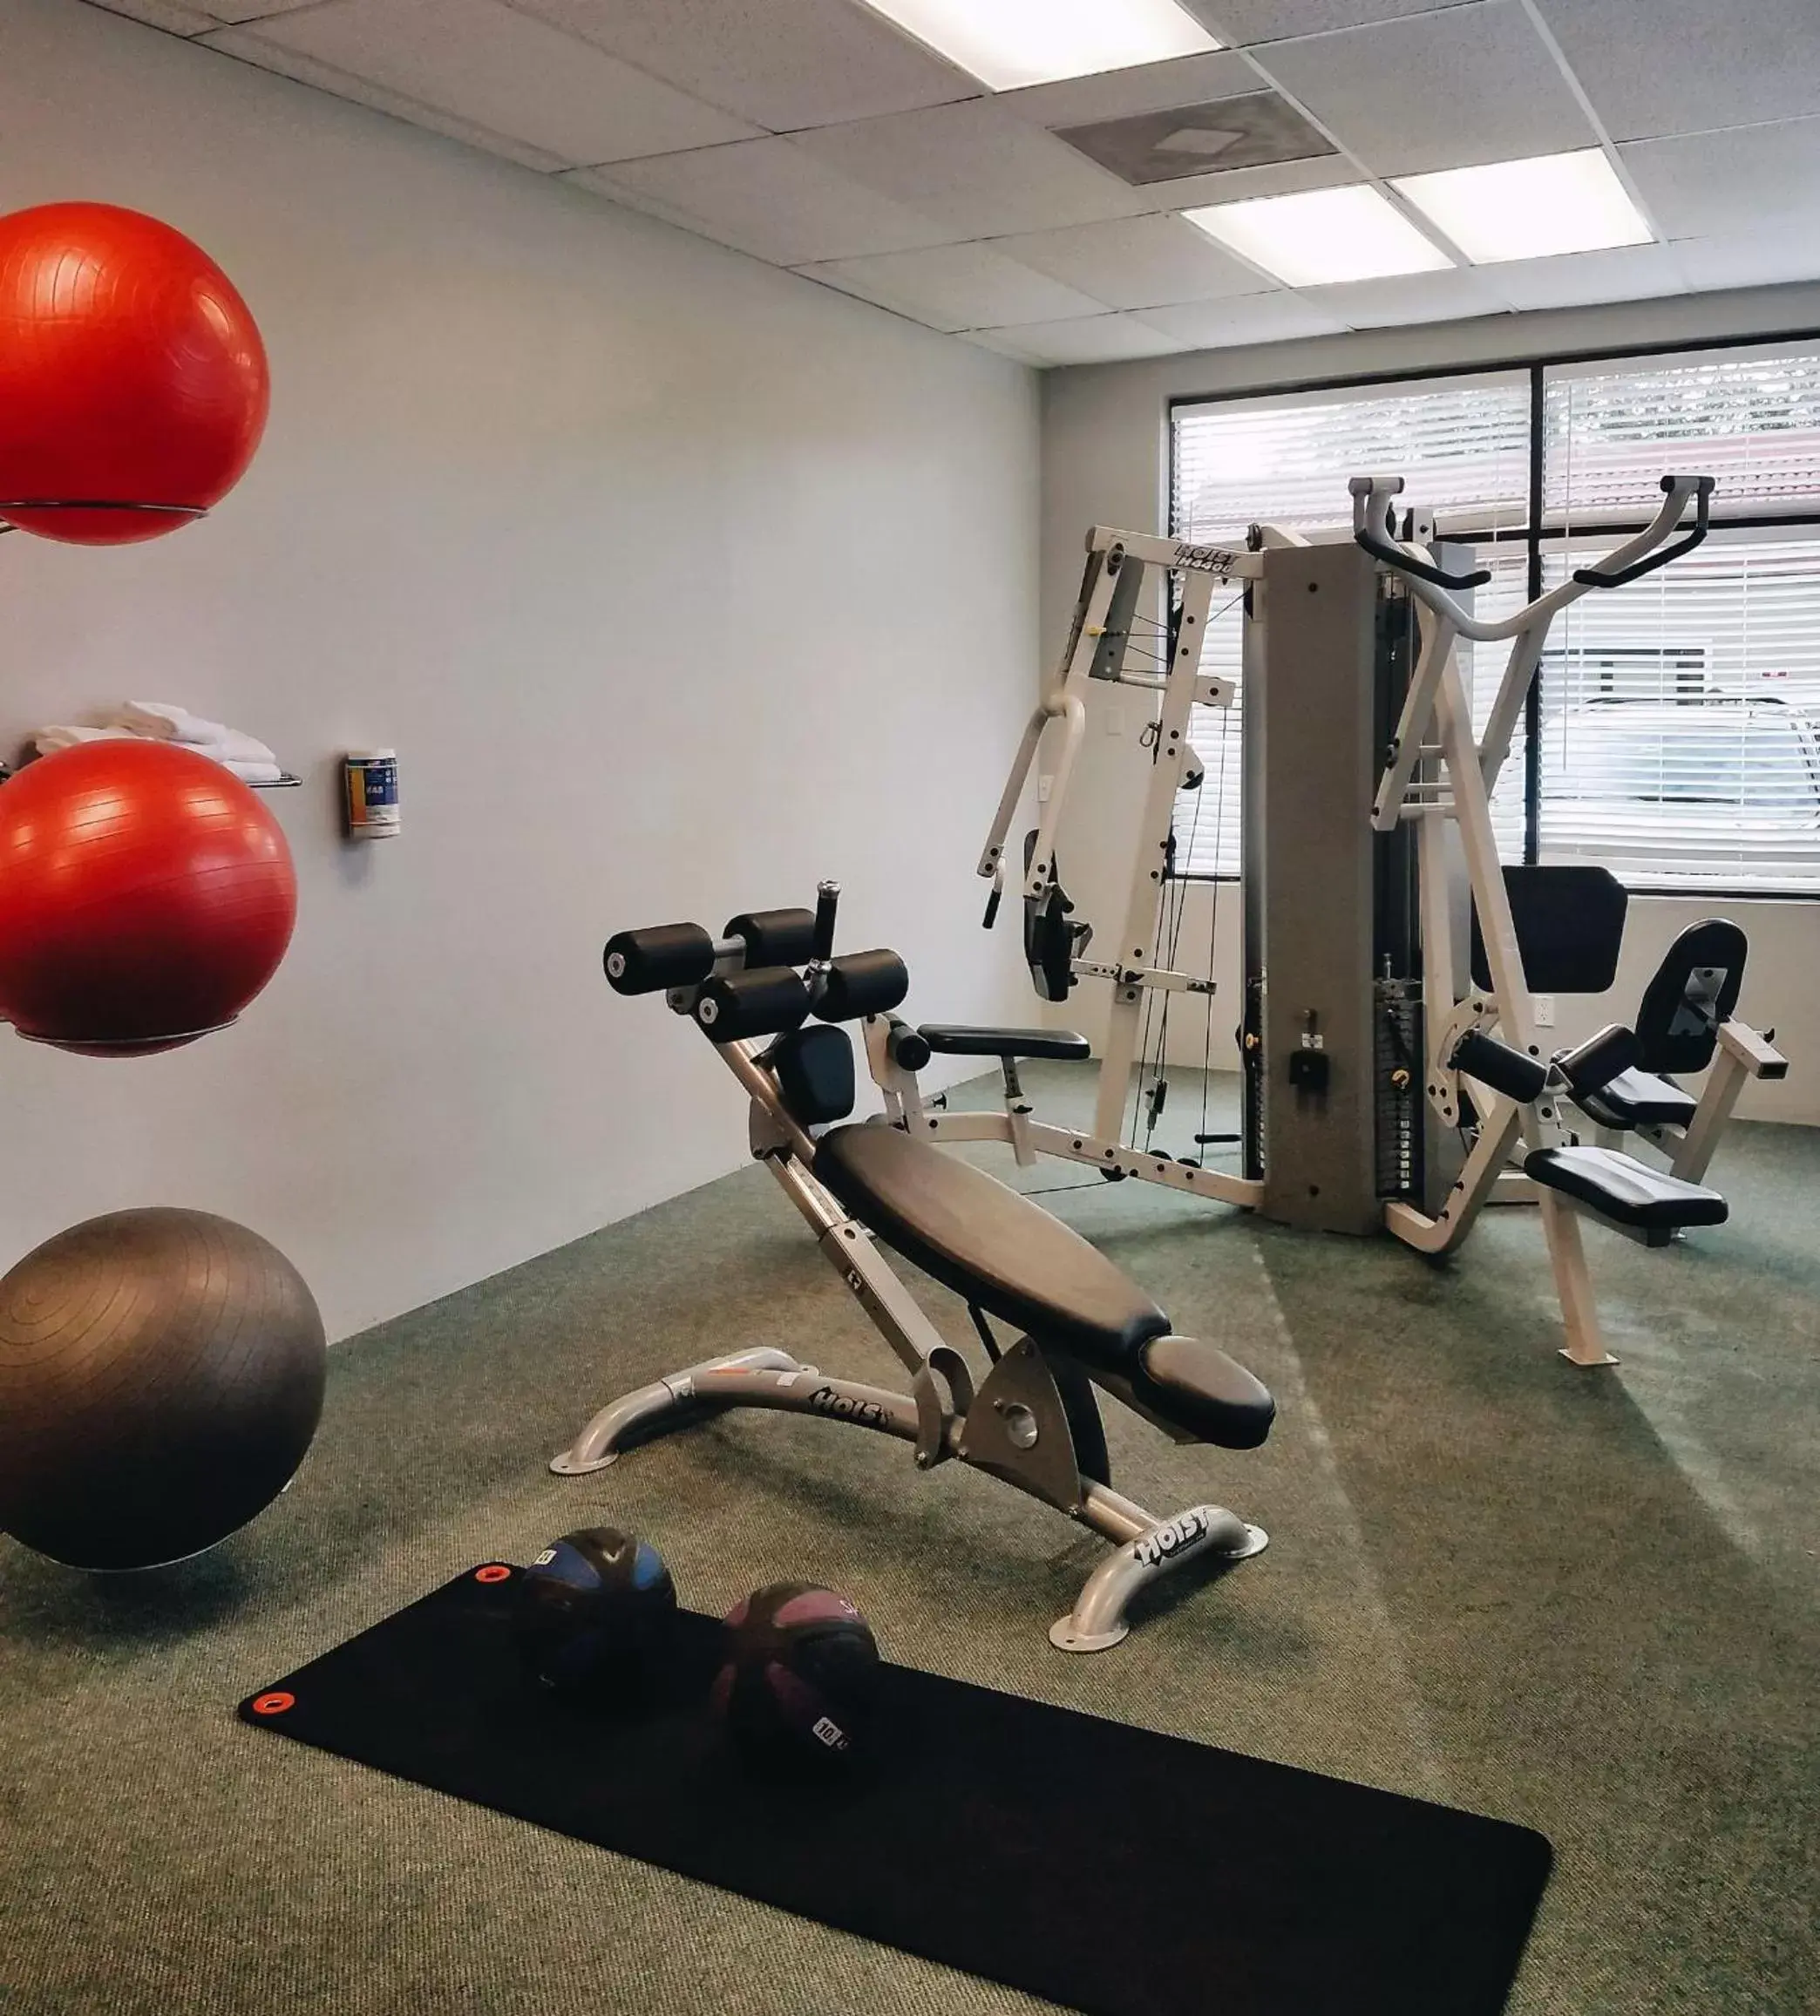 Fitness centre/facilities, Fitness Center/Facilities in Parc Corniche Condominium Suites